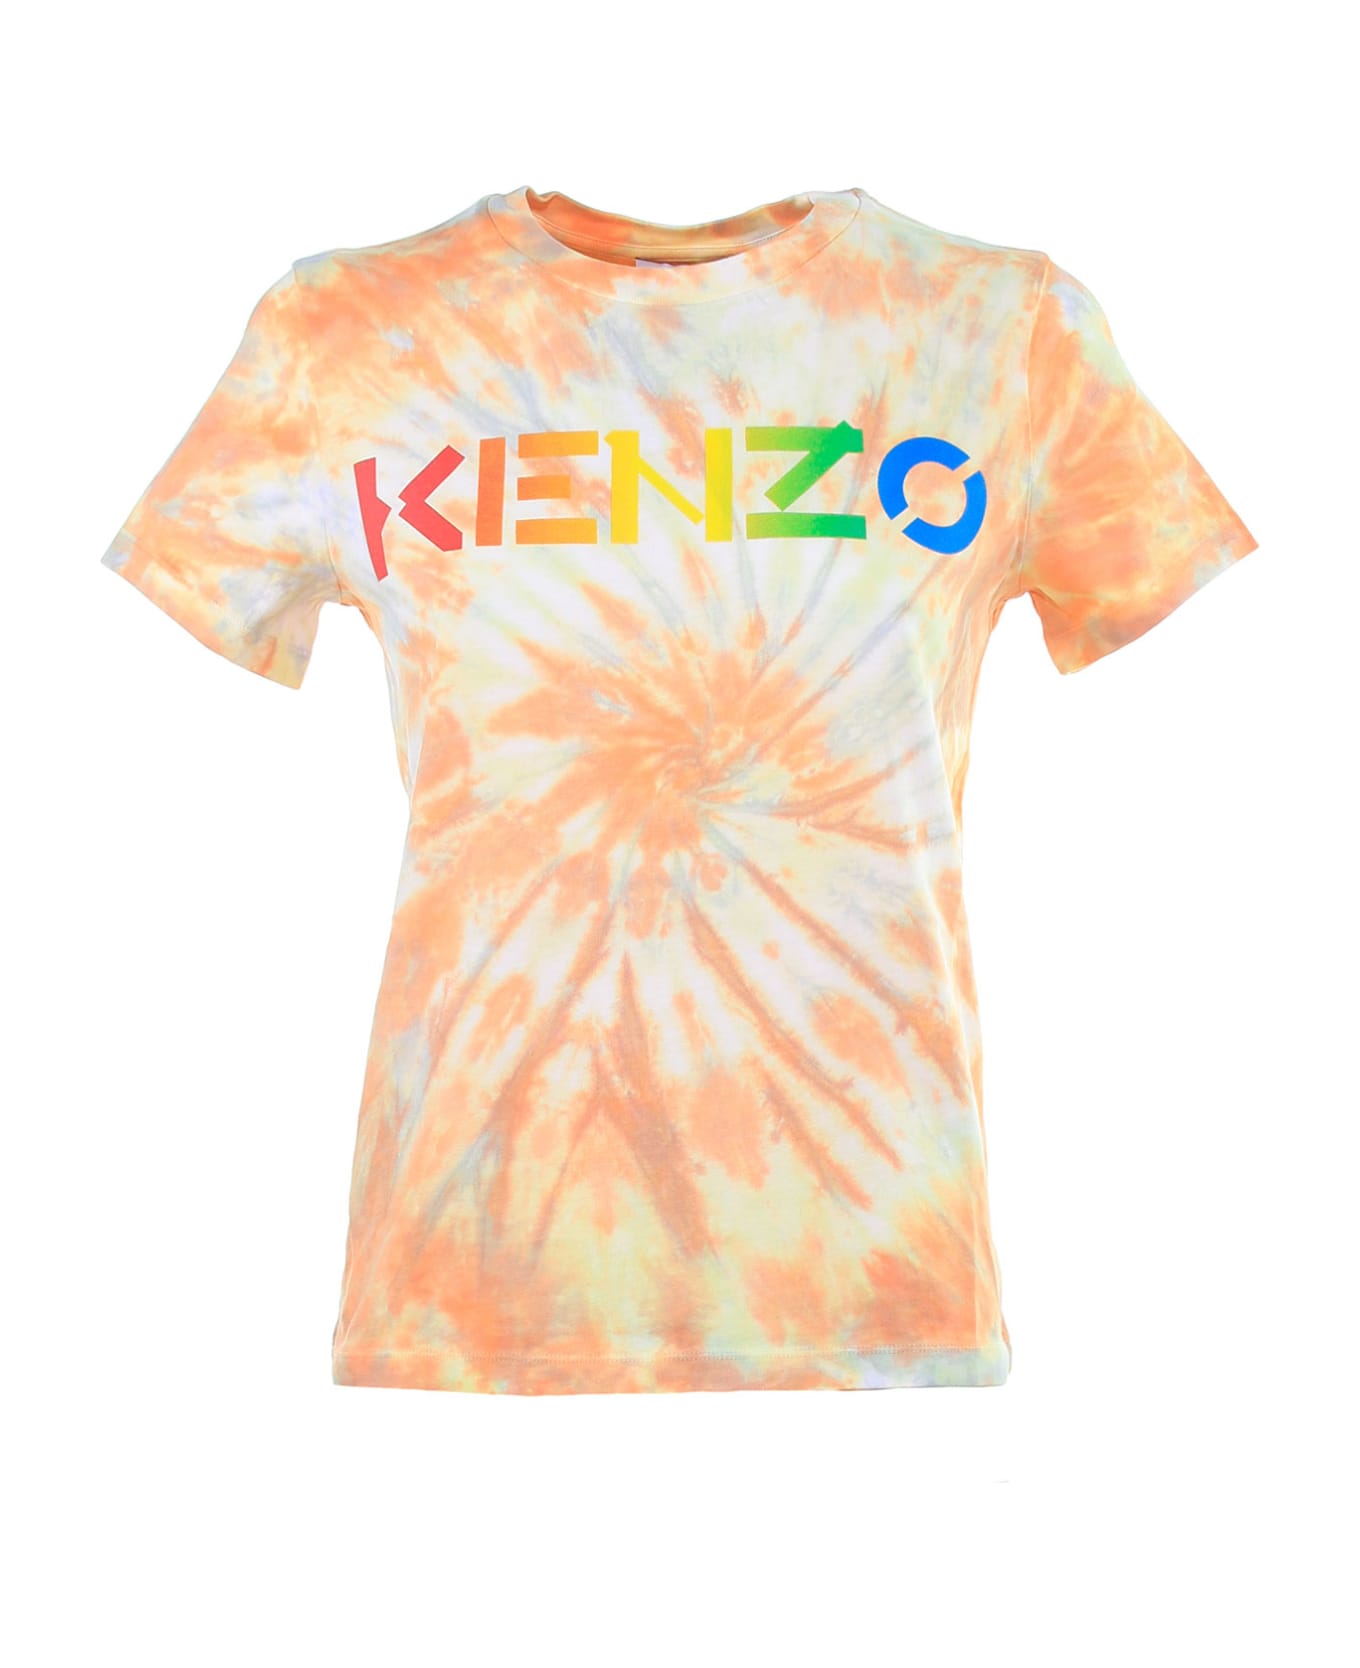 Kenzo T-Shirt - PEACH